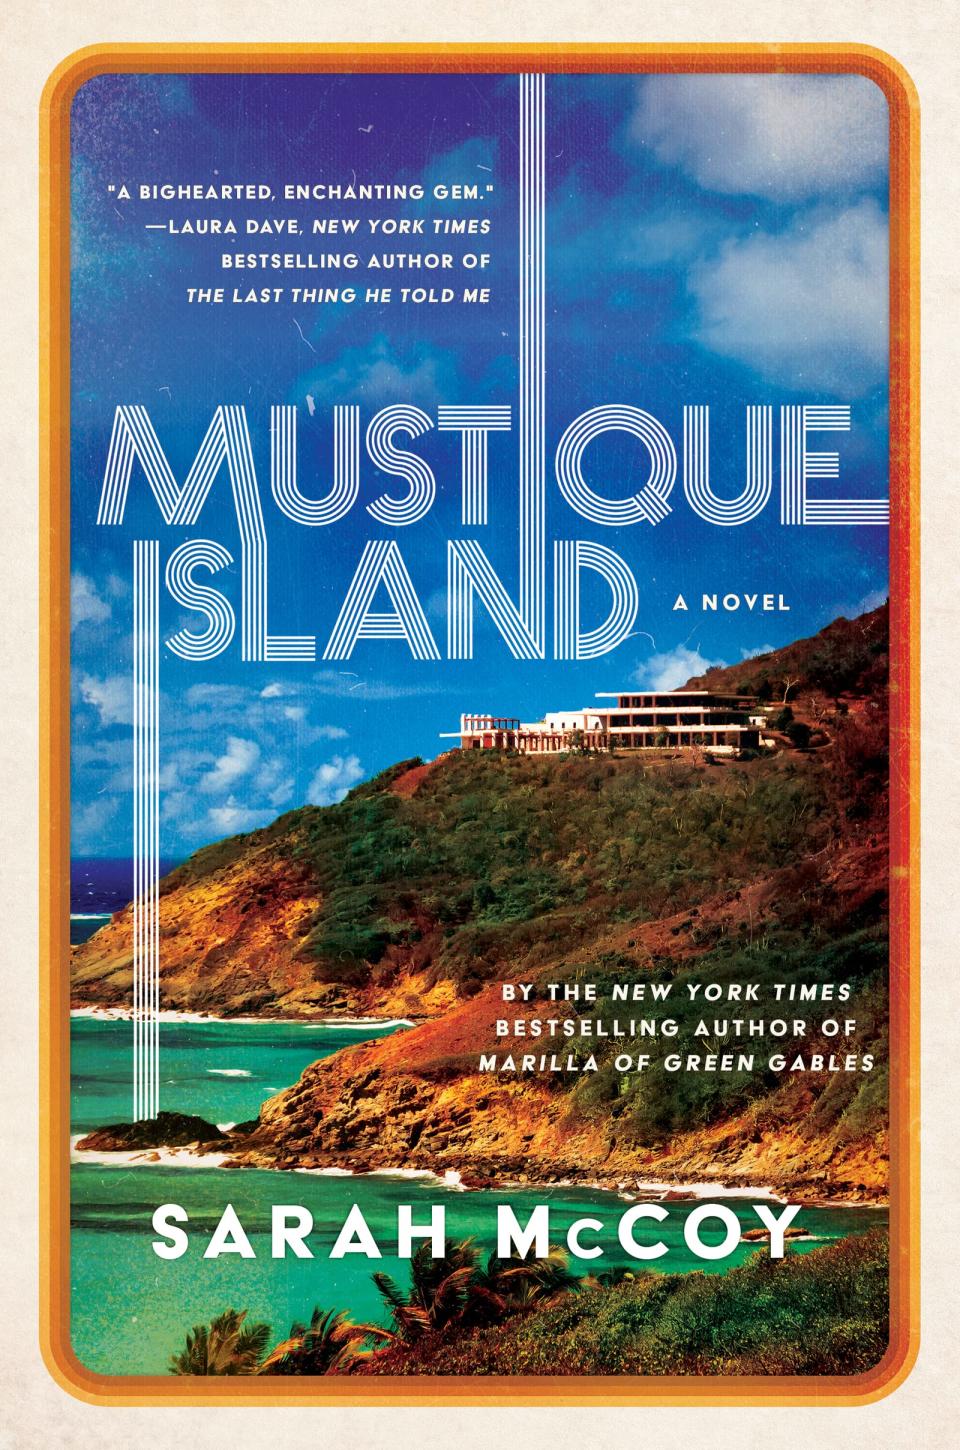 "Mustique Island"